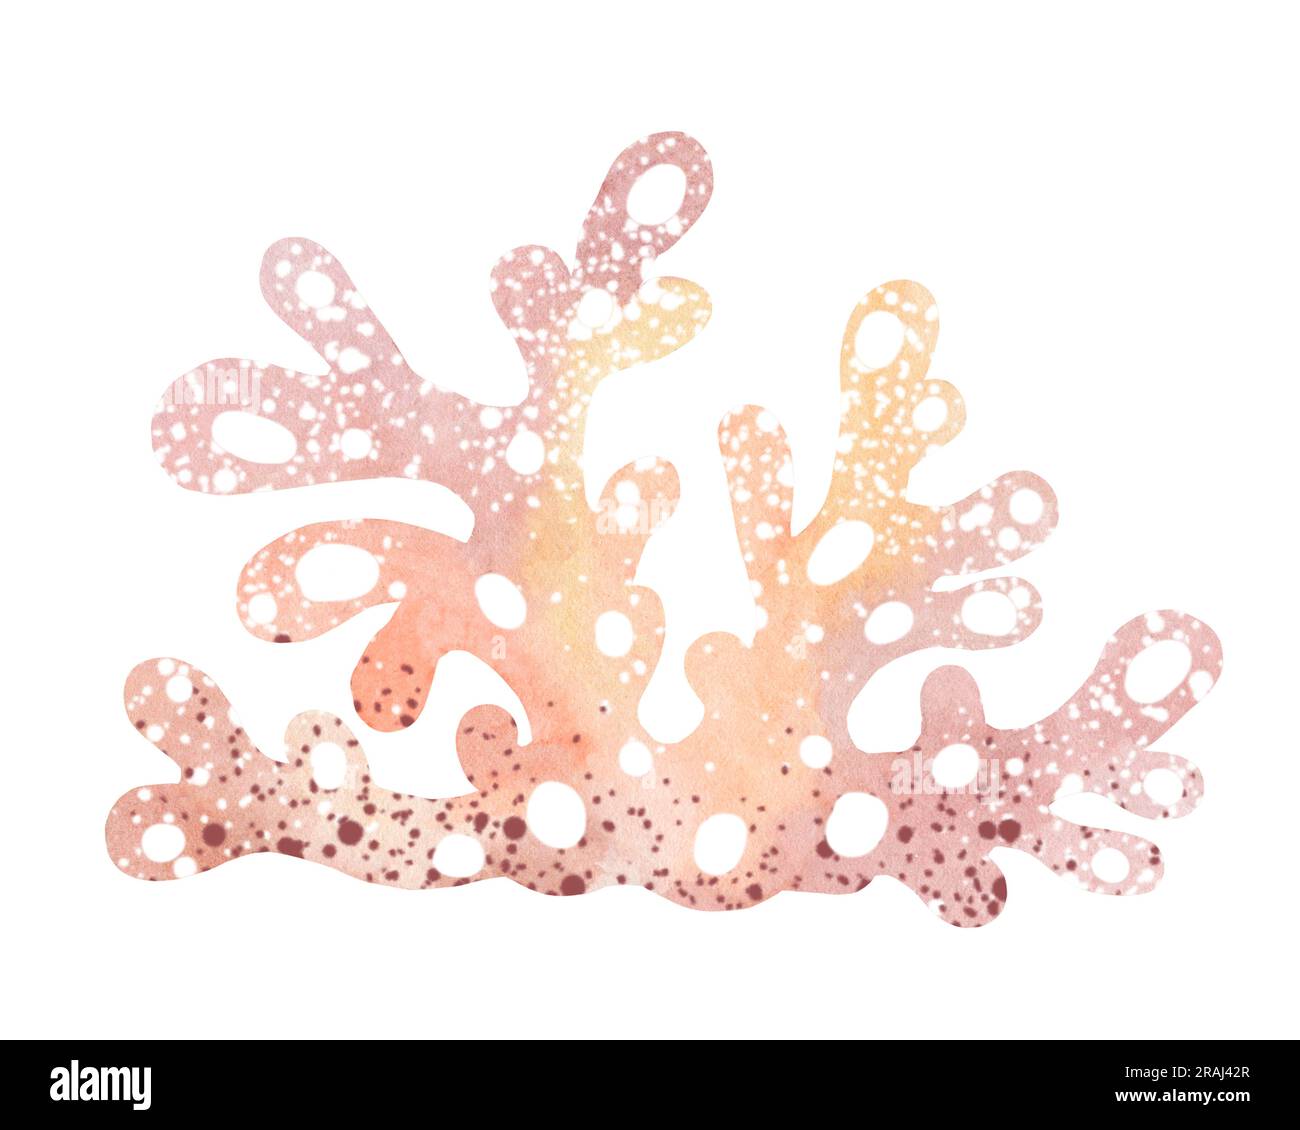 Acquerello illustrazione di coralli marini subacquei. Impianti subacquei marini. Illustrazione isolata su sfondo bianco. Cartolina, adesivo Foto Stock